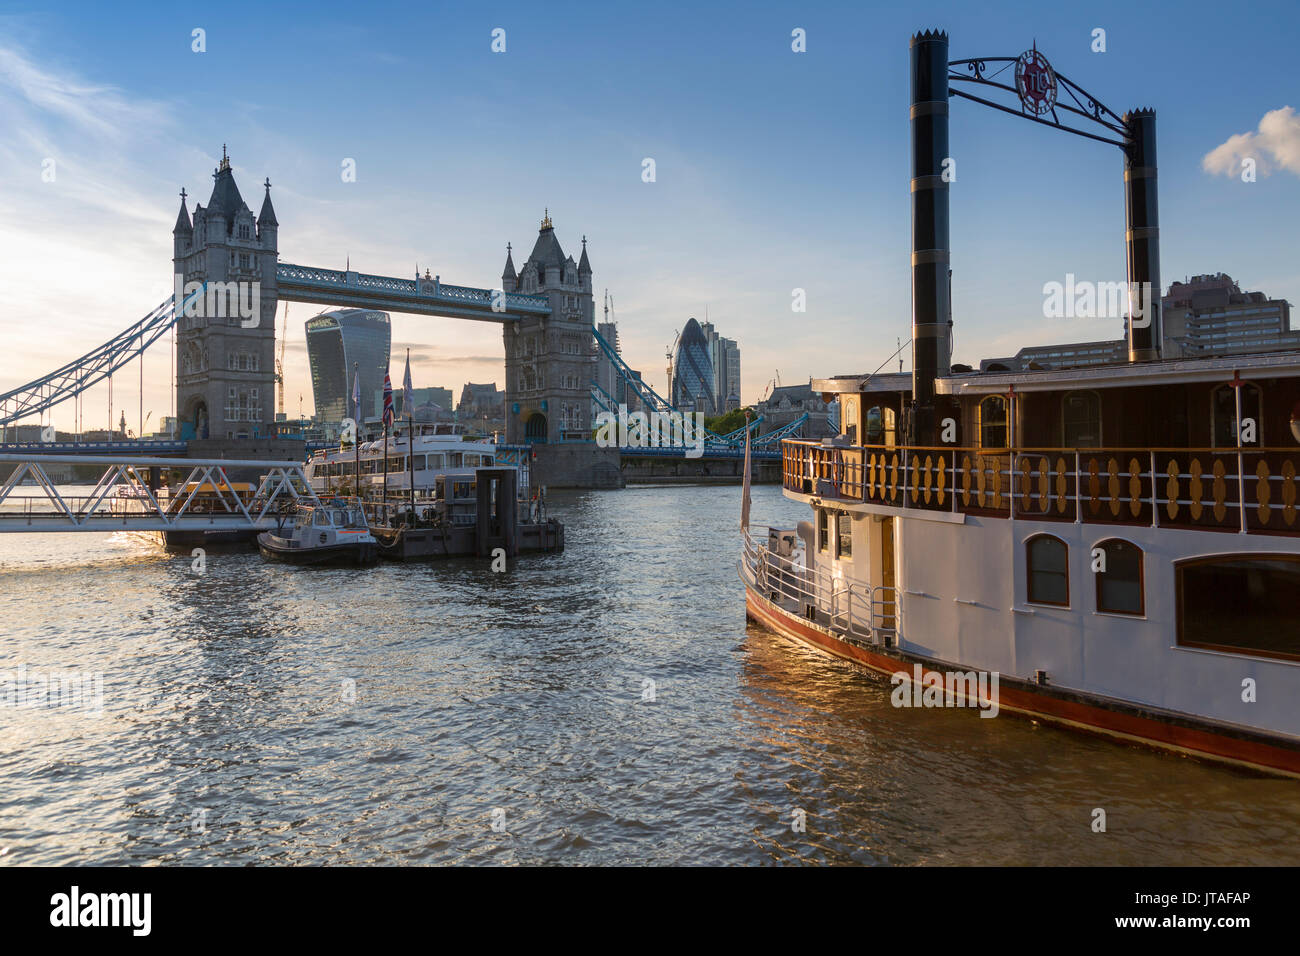 Tower Bridge, bateau traditionnel et City of London skyline de Butler's Wharf, Londres, Angleterre, Royaume-Uni, Europe Banque D'Images